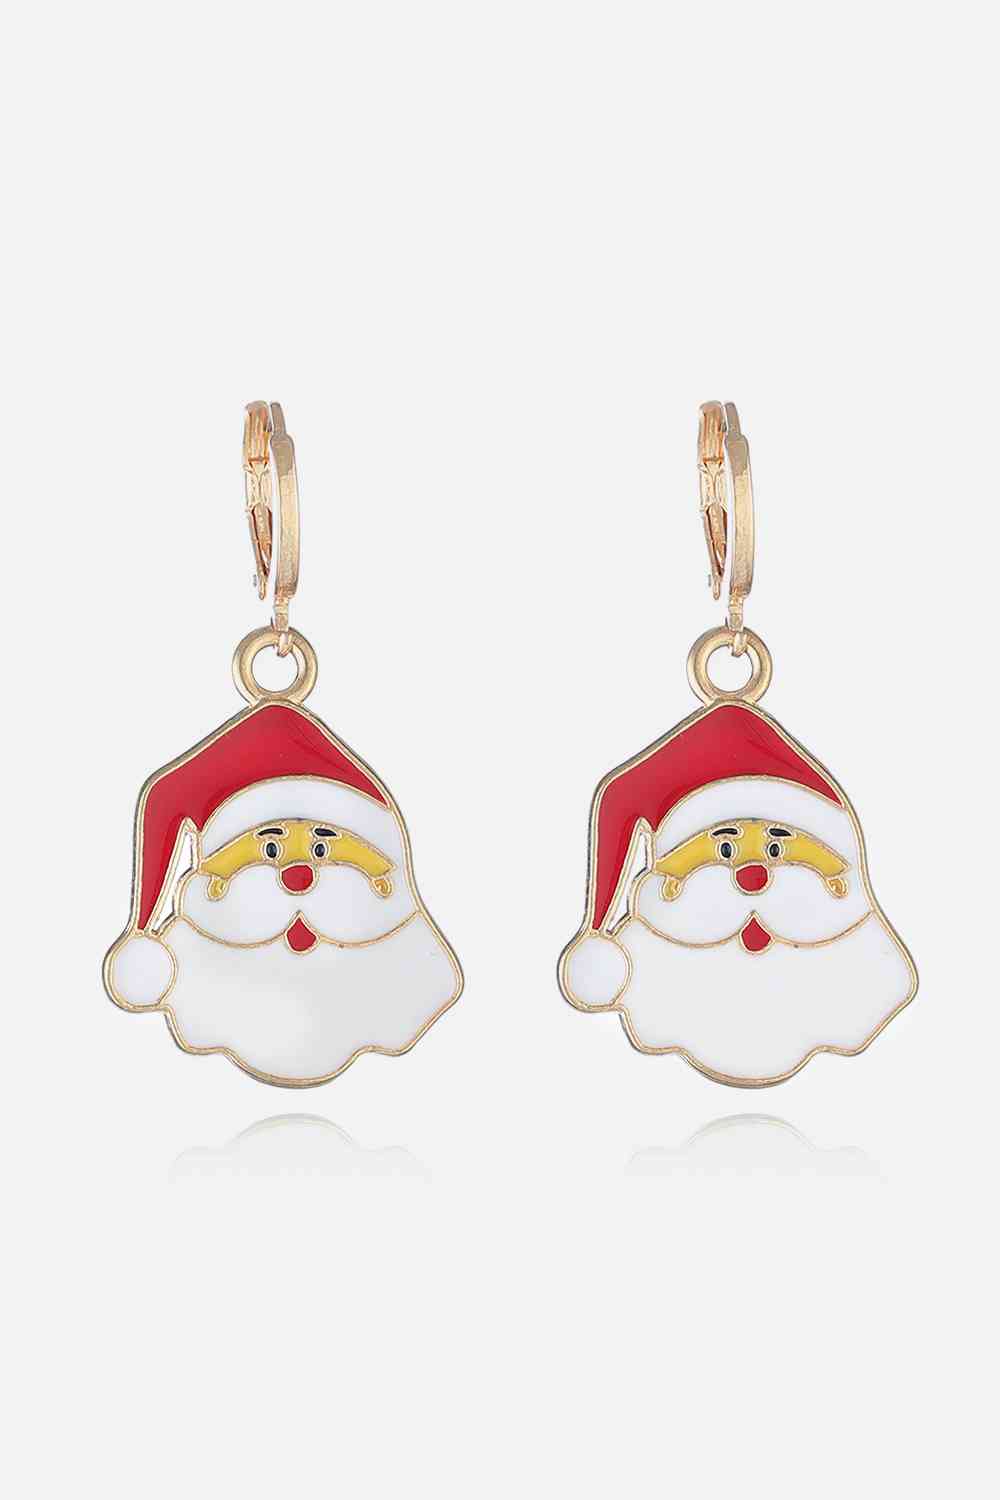 Christmas Theme Alloy Earrings - Style A / One Size - Women’s Jewelry - Earrings - 4 - 2024